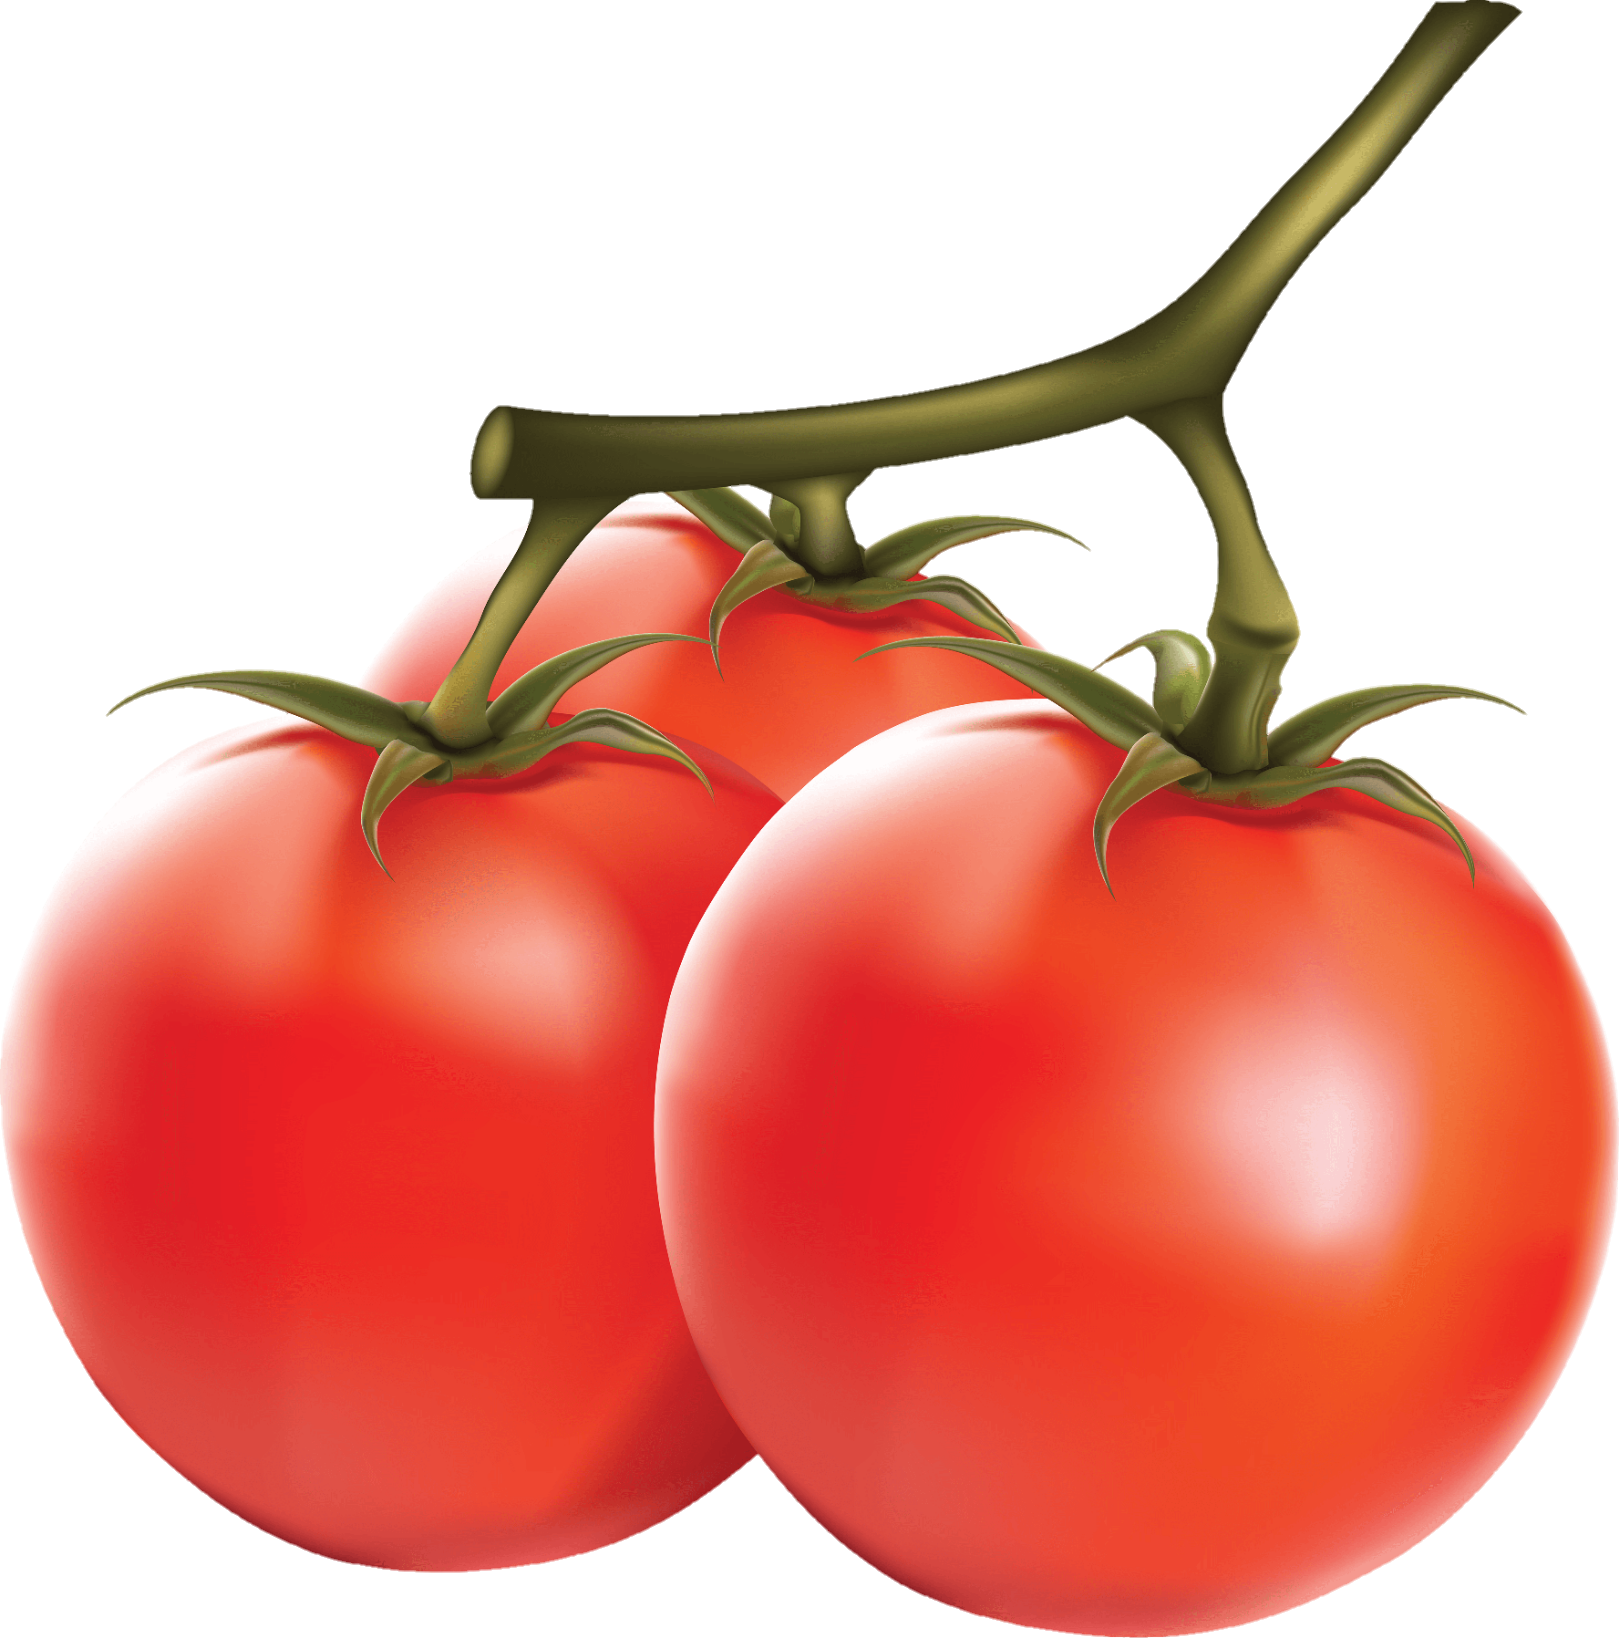 Tomato-26-1